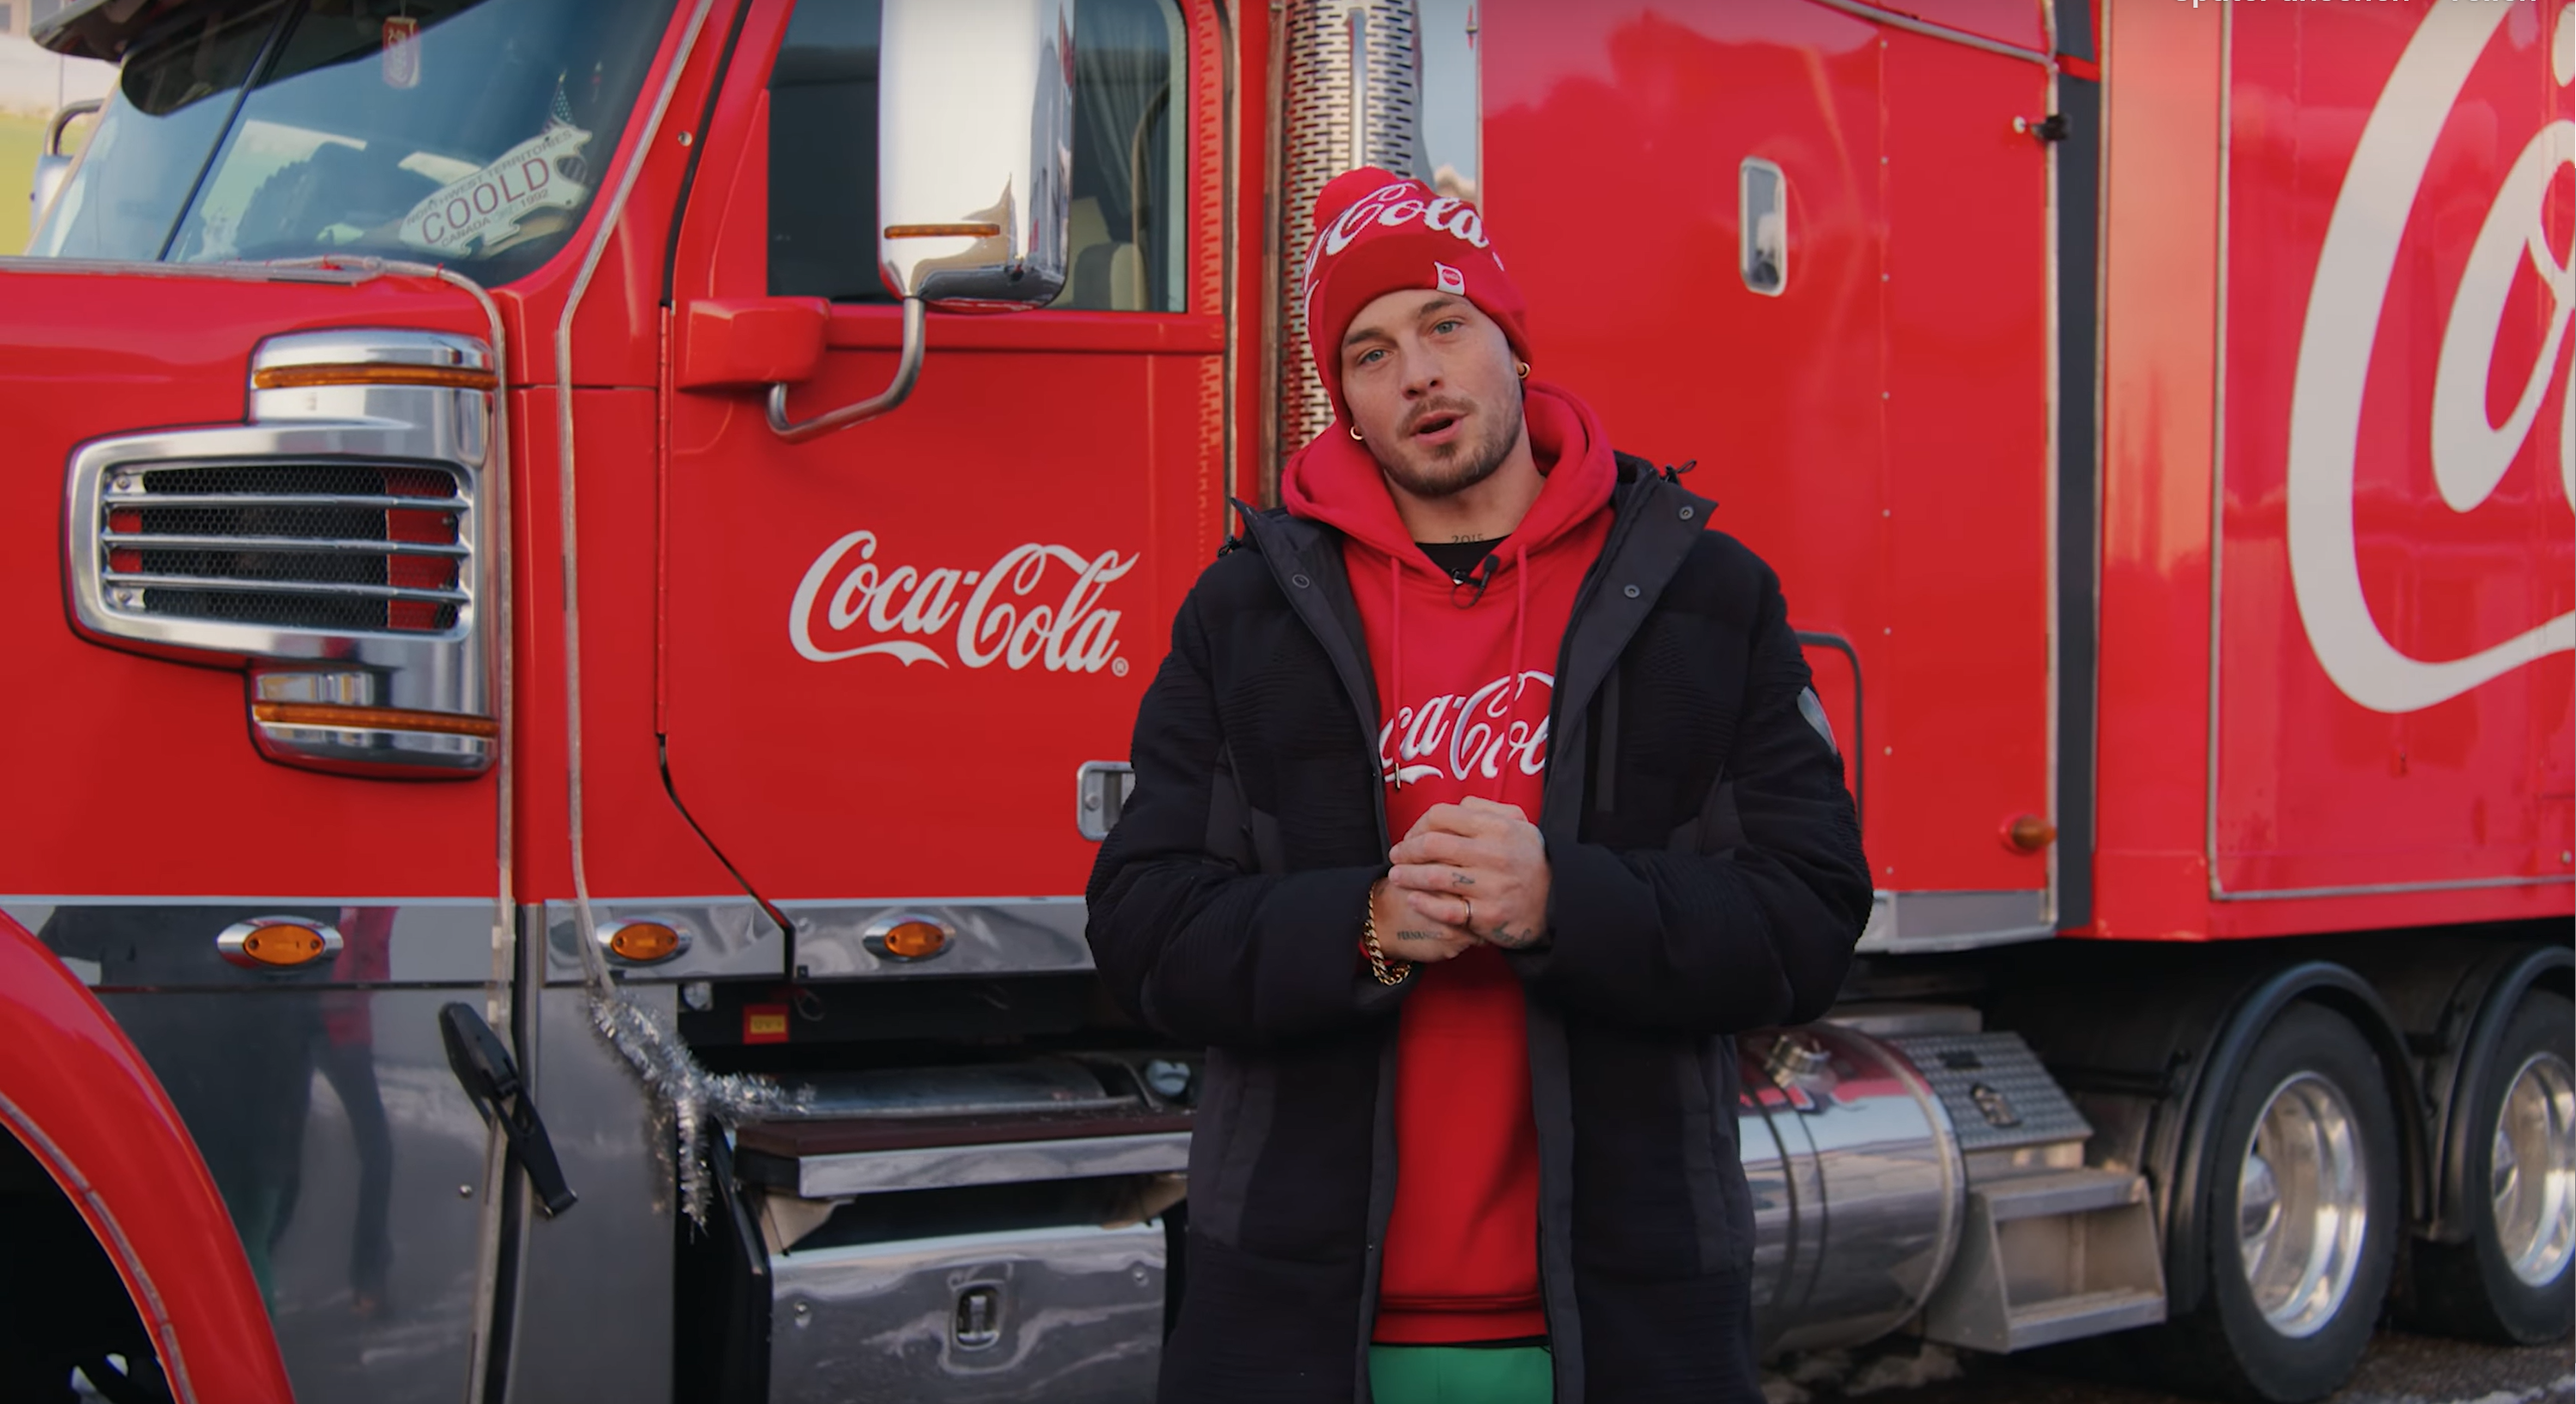 Loco Escrito standing in front of the coca-cola truck